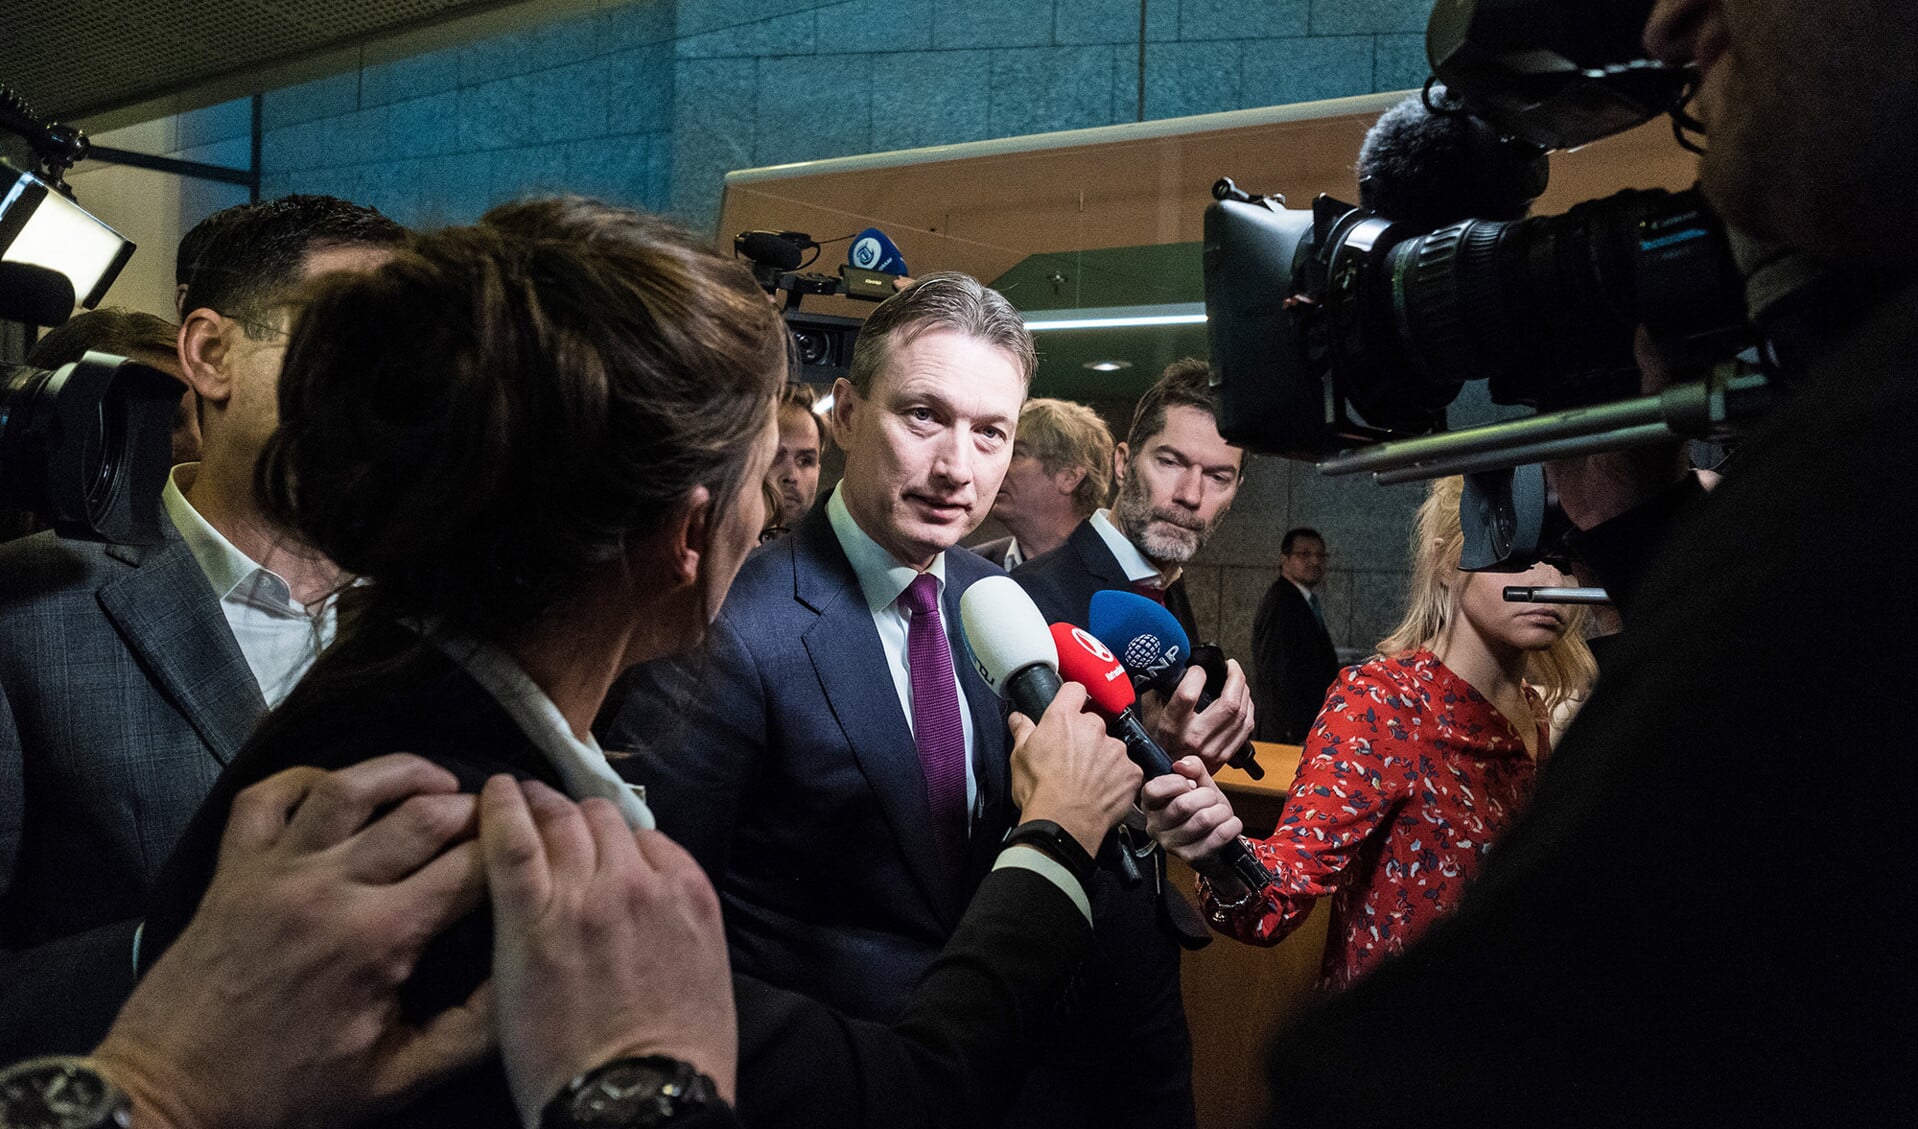 Politieke ambtsdragers kunnen snel hun baan verliezen. Een recent voorbeeld daarvan is Halbe Zijlstra als minister van Buitenlandse Zaken. Op de foto verlaat hij de Tweede Kamer na het afleggen van een verklaring over zijn aftreden.